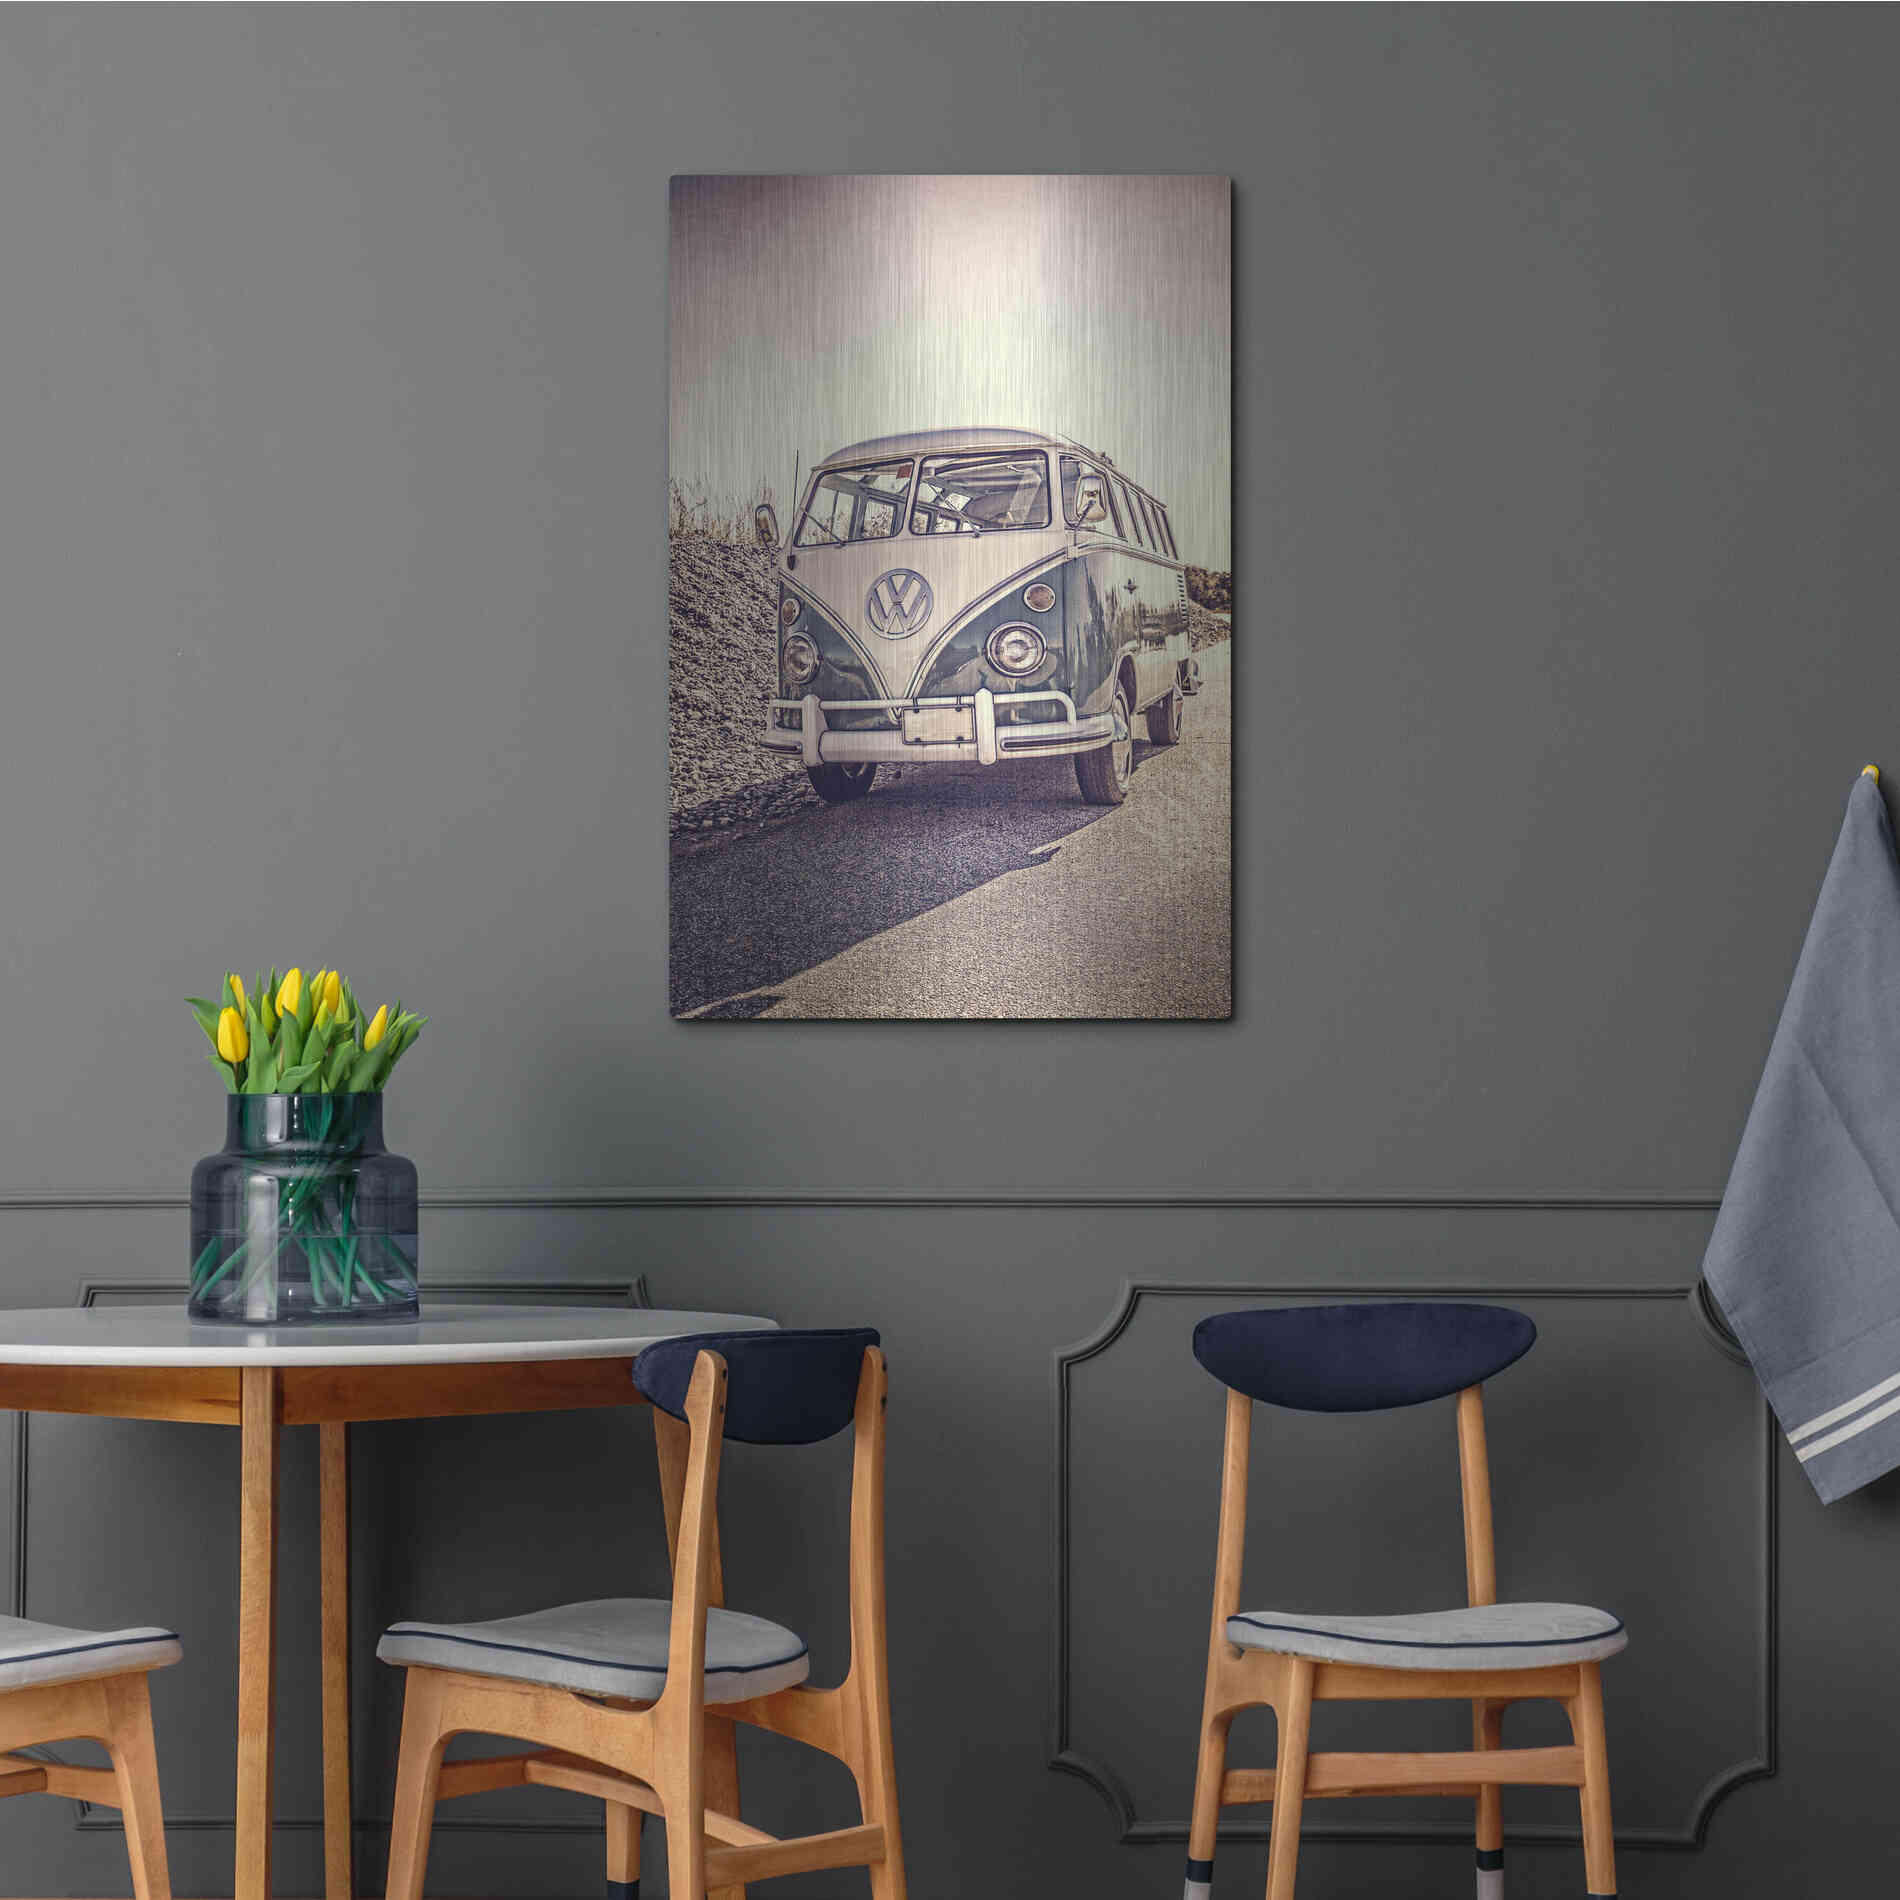 Luxe Metal Art 'Surfers’ Vintage VW Bus' by Edward M. Fielding, Metal Wall Art,24x36